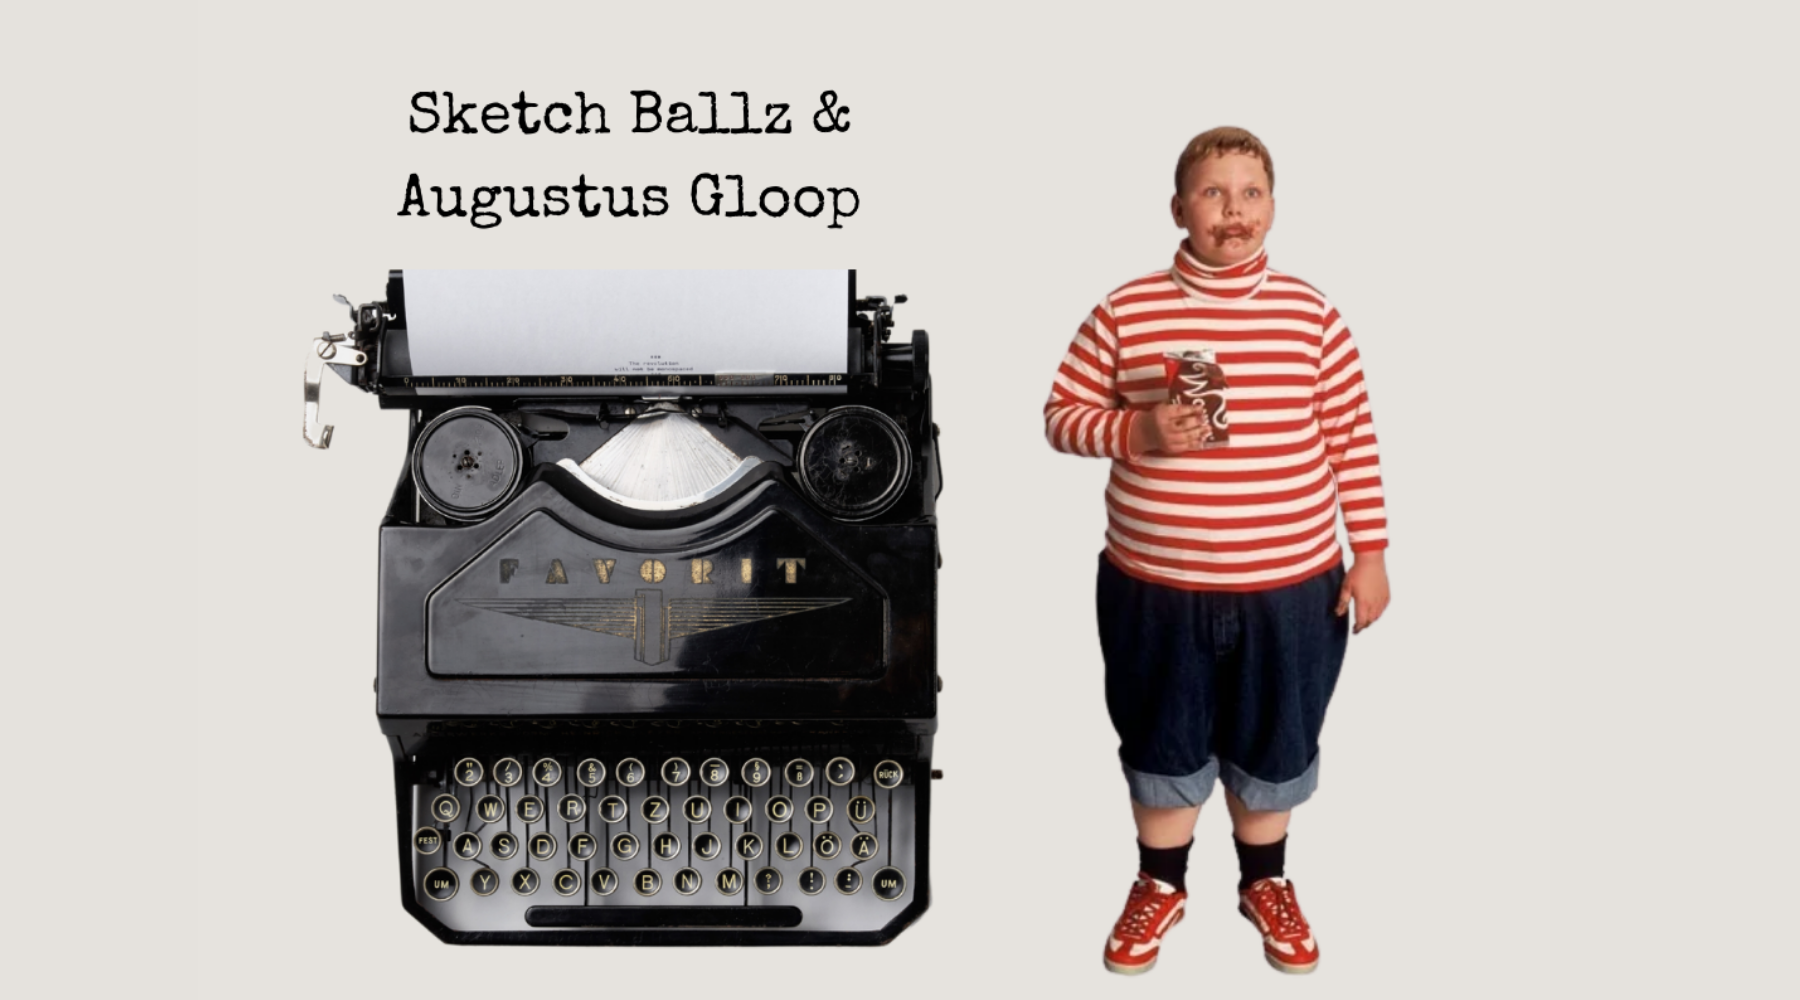 Sketch Ballz & Augustus Gloop